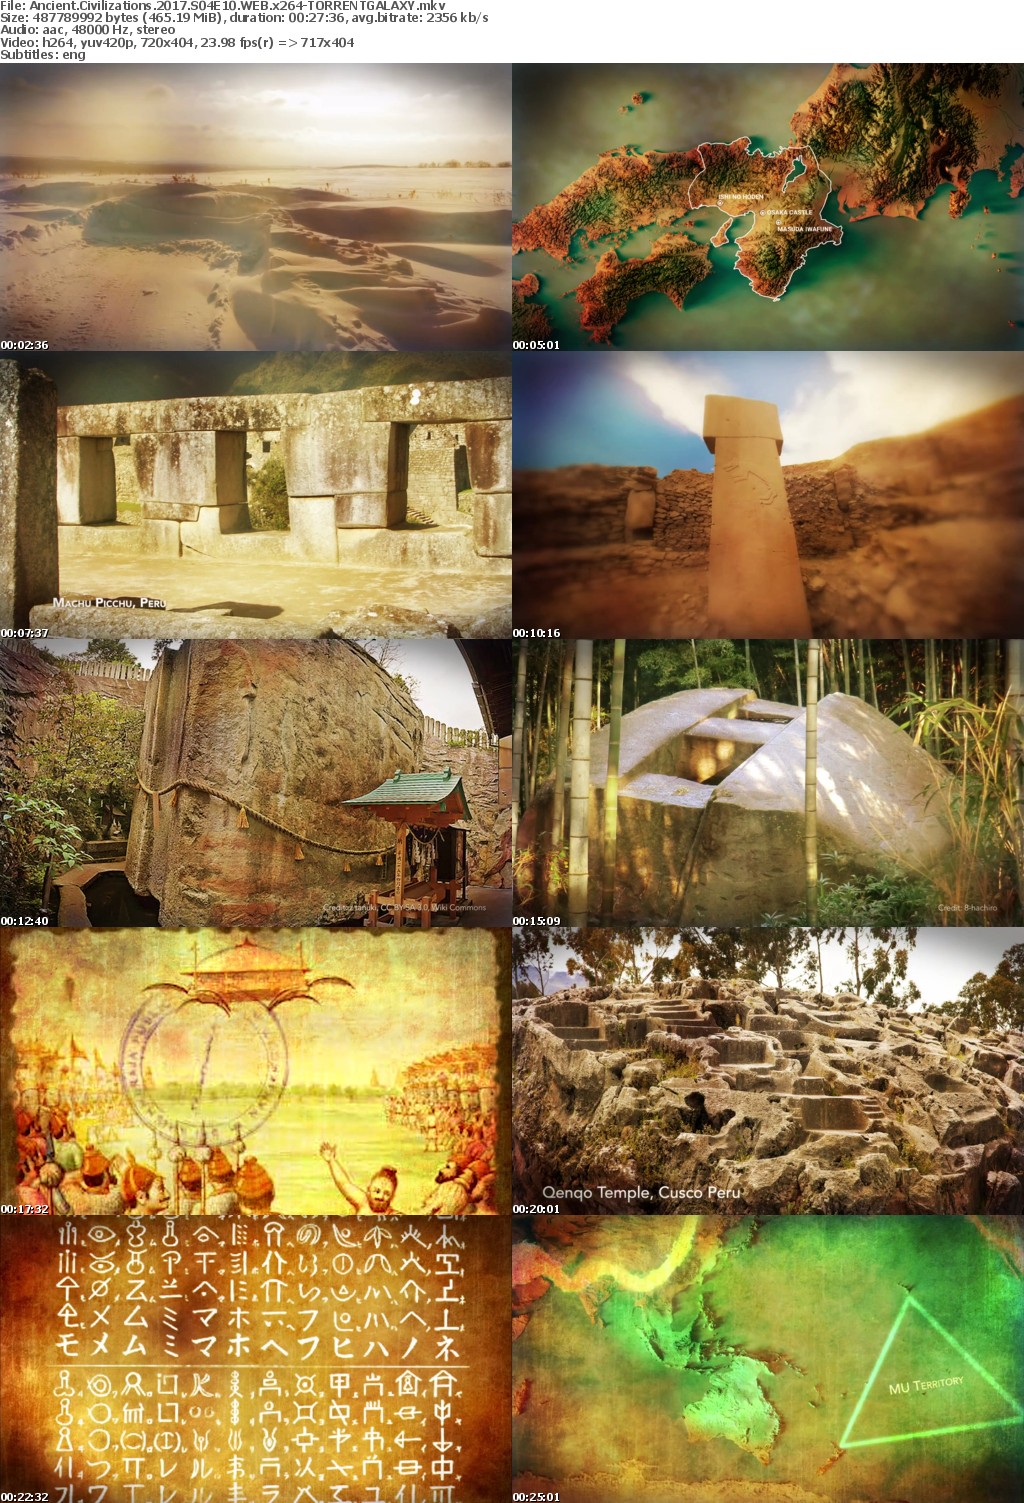 Ancient Civilizations 2017 S04E10 WEB x264-GALAXY